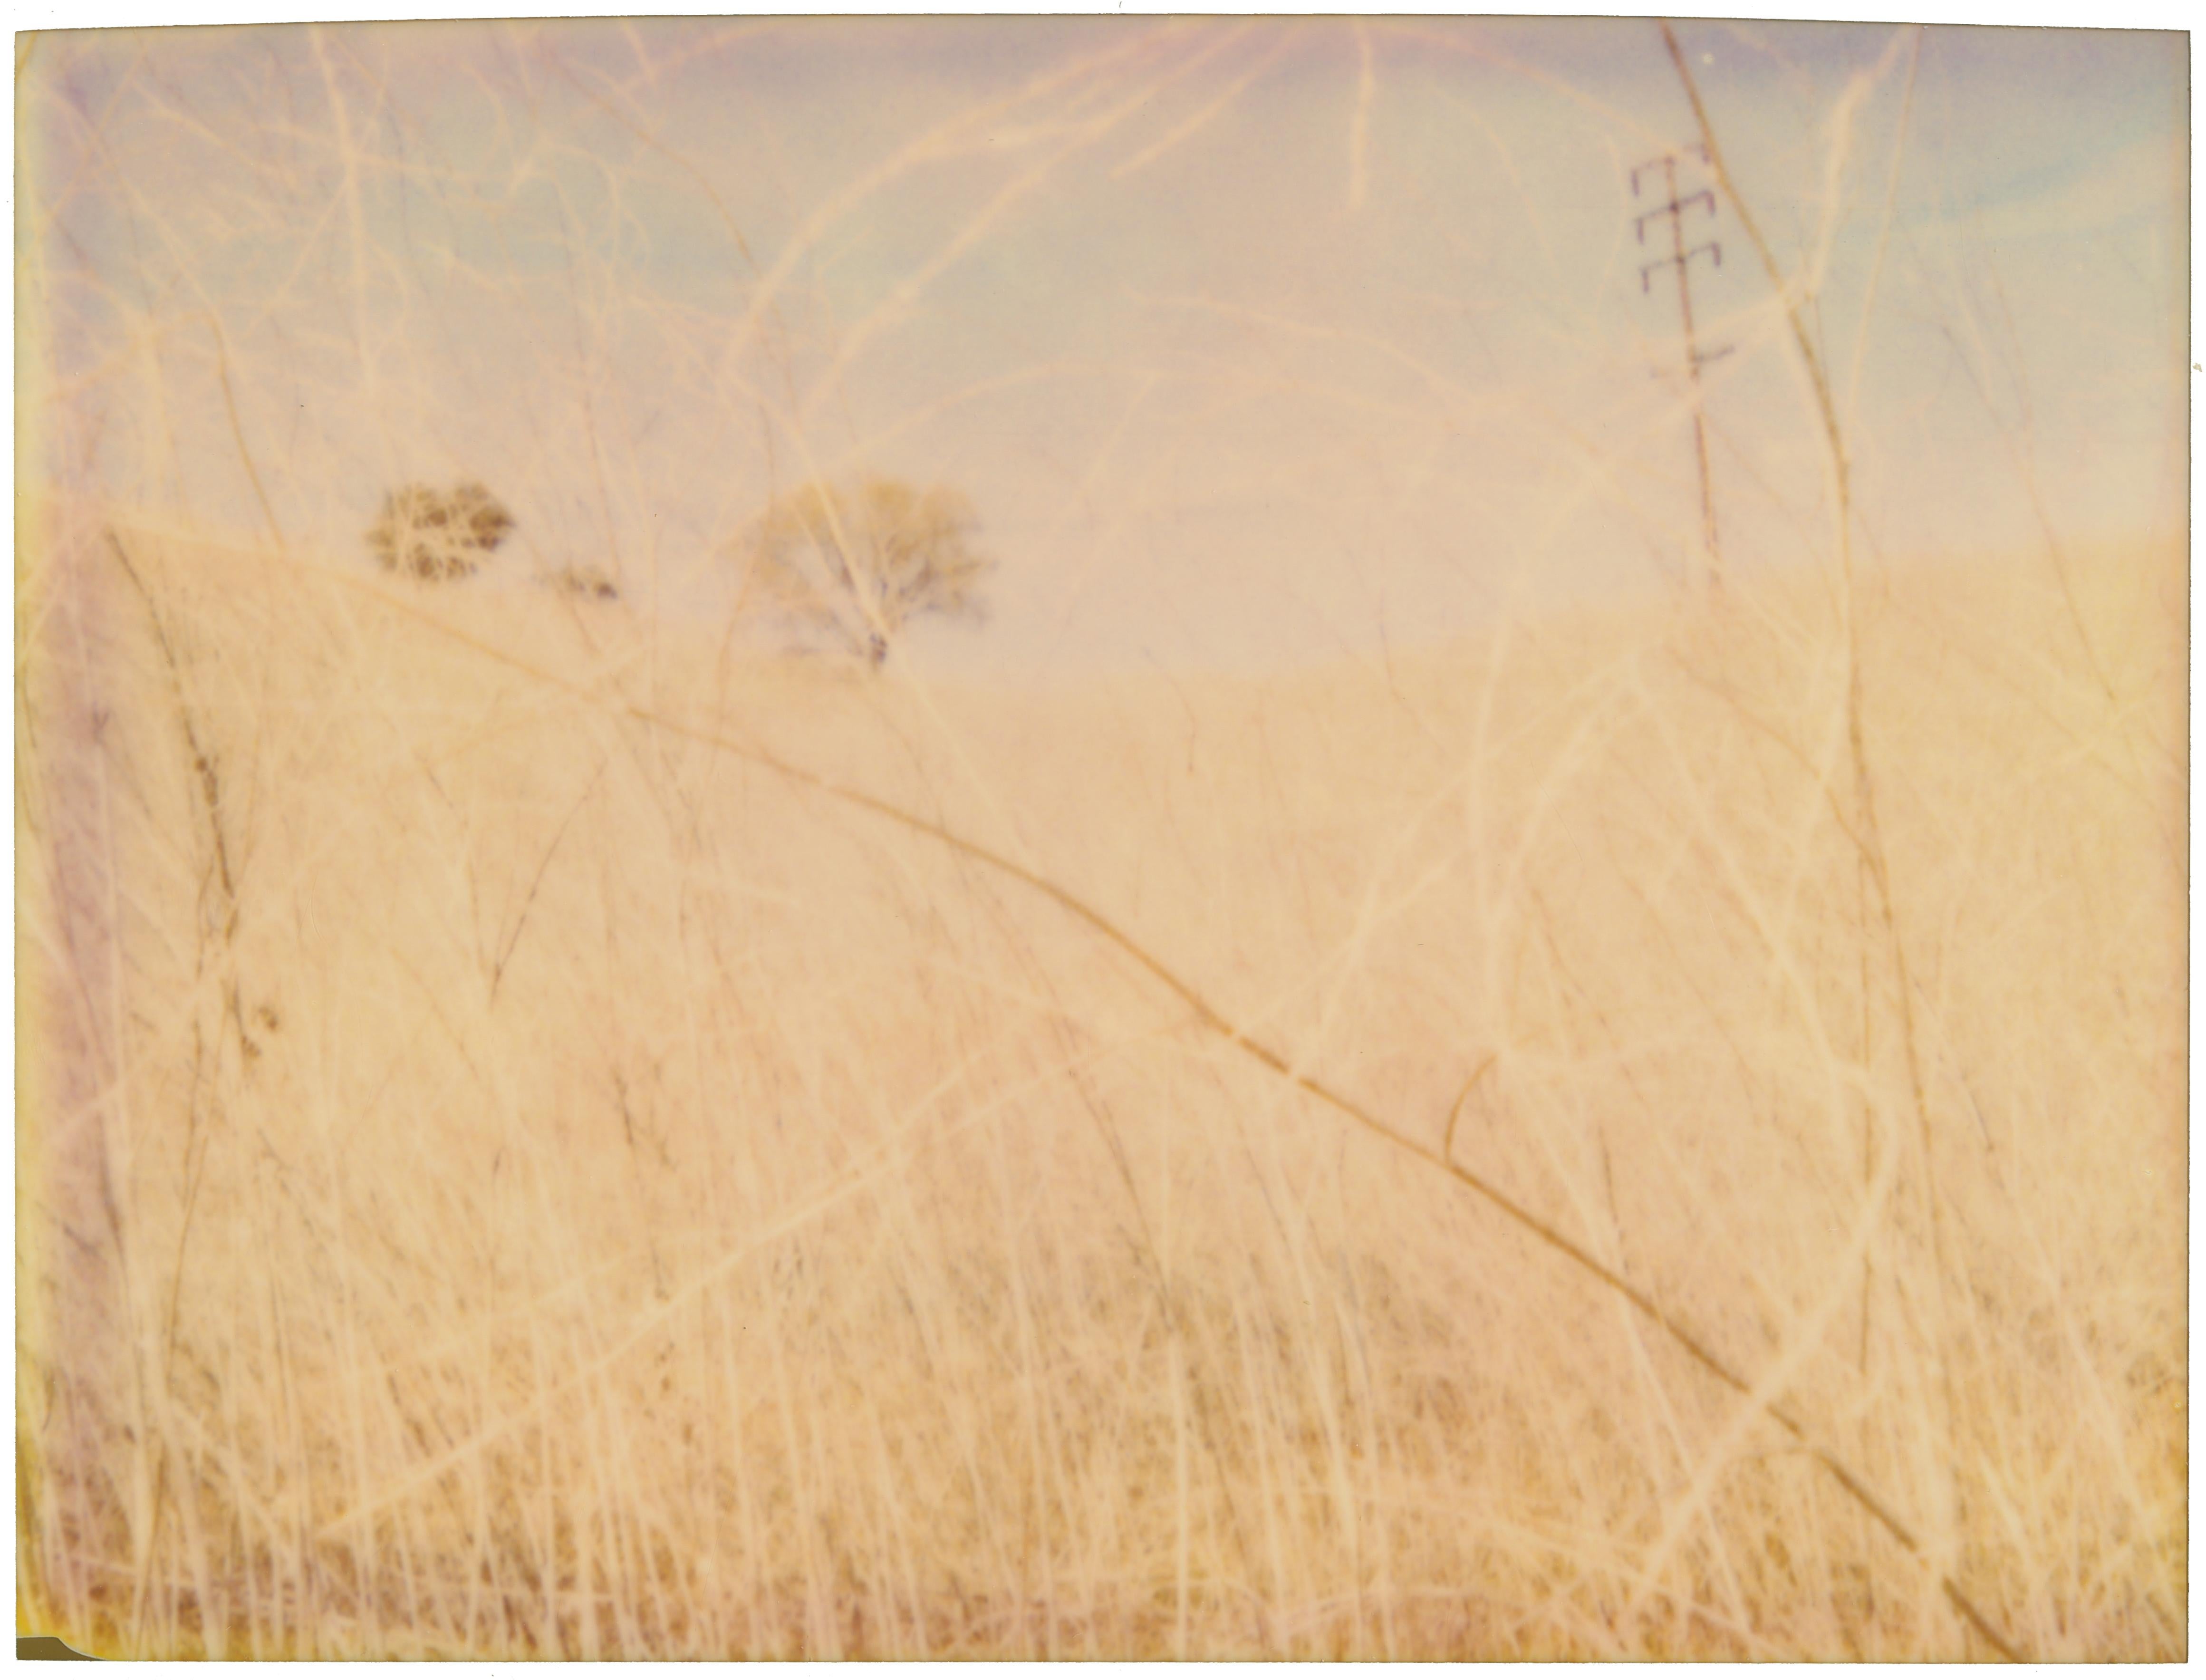 Stefanie Schneider Portrait Photograph – The Field (Musica Poetica) – analog